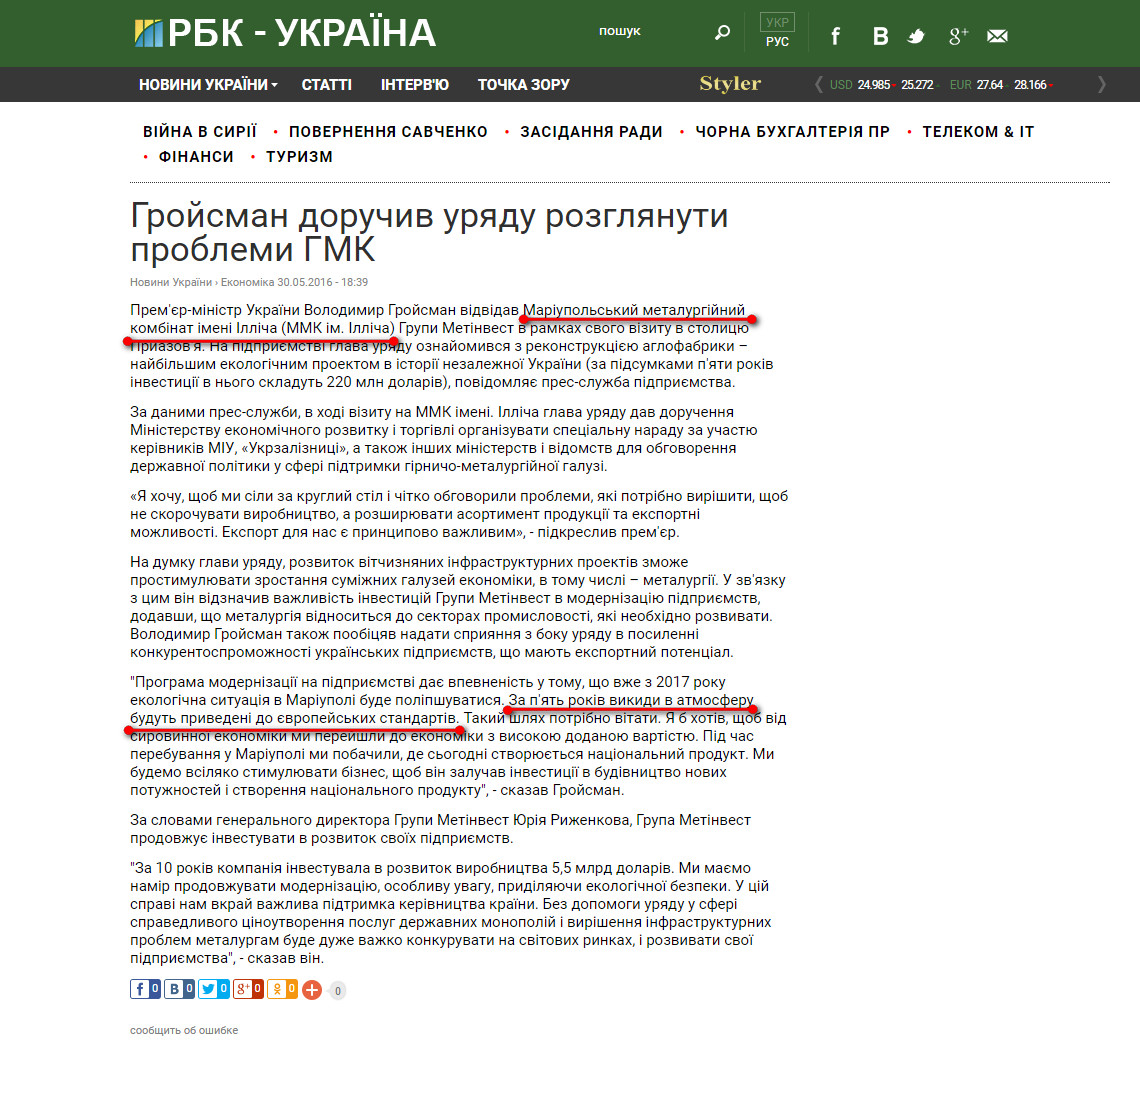 https://www.rbc.ua/ukr/news/groysman-poruchil-pravitelstvu-rassmotret-1464622745.html